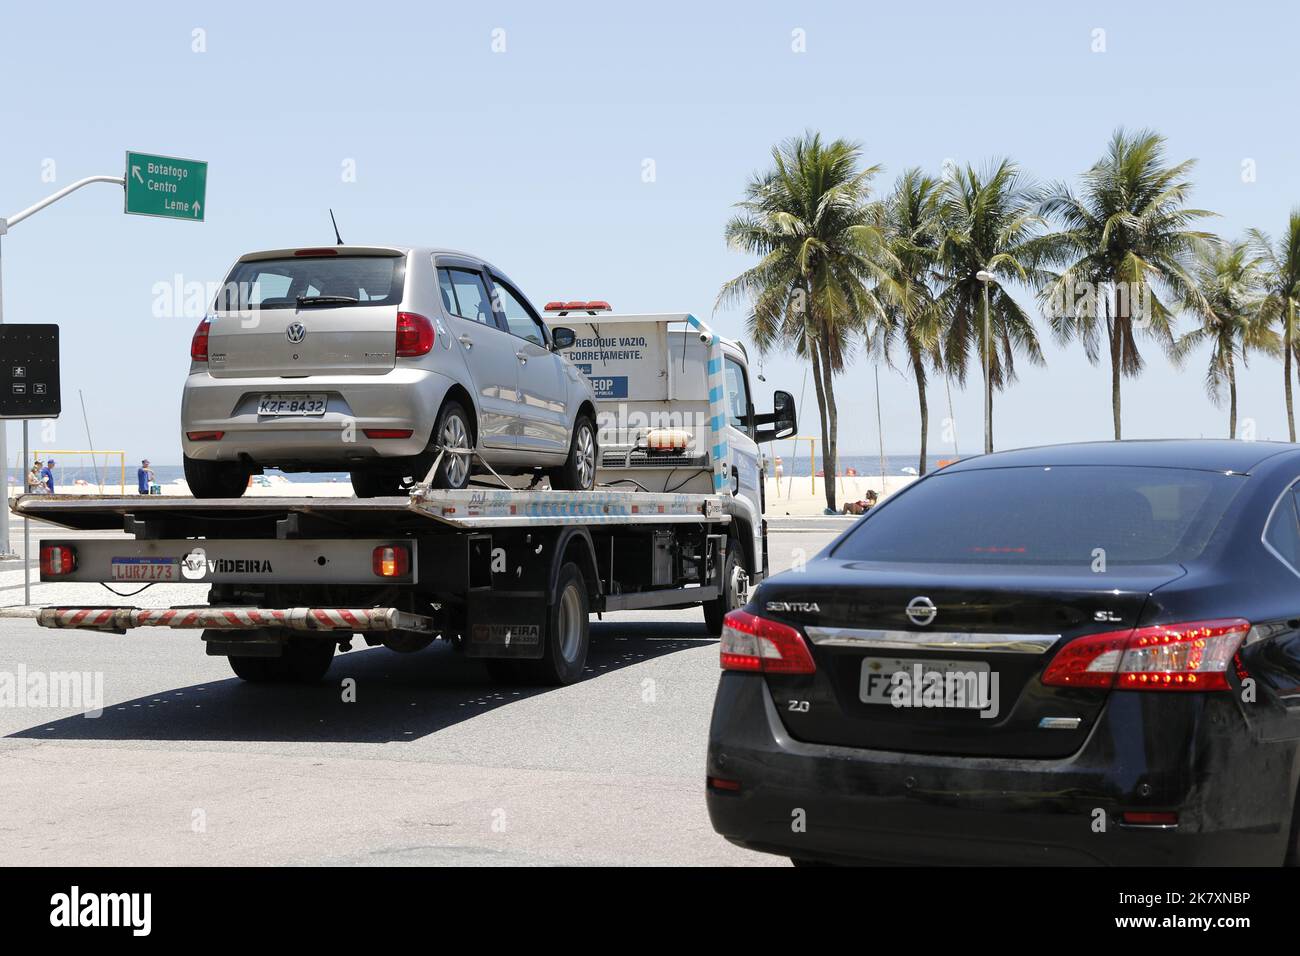 Abschleppwagen schleppen beschlagnahmt Fahrzeuge für Verkehrsverstöße. Illegales Parken, Bestrafung und Geldstrafe für unregelmäßiges Fahren Stockfoto